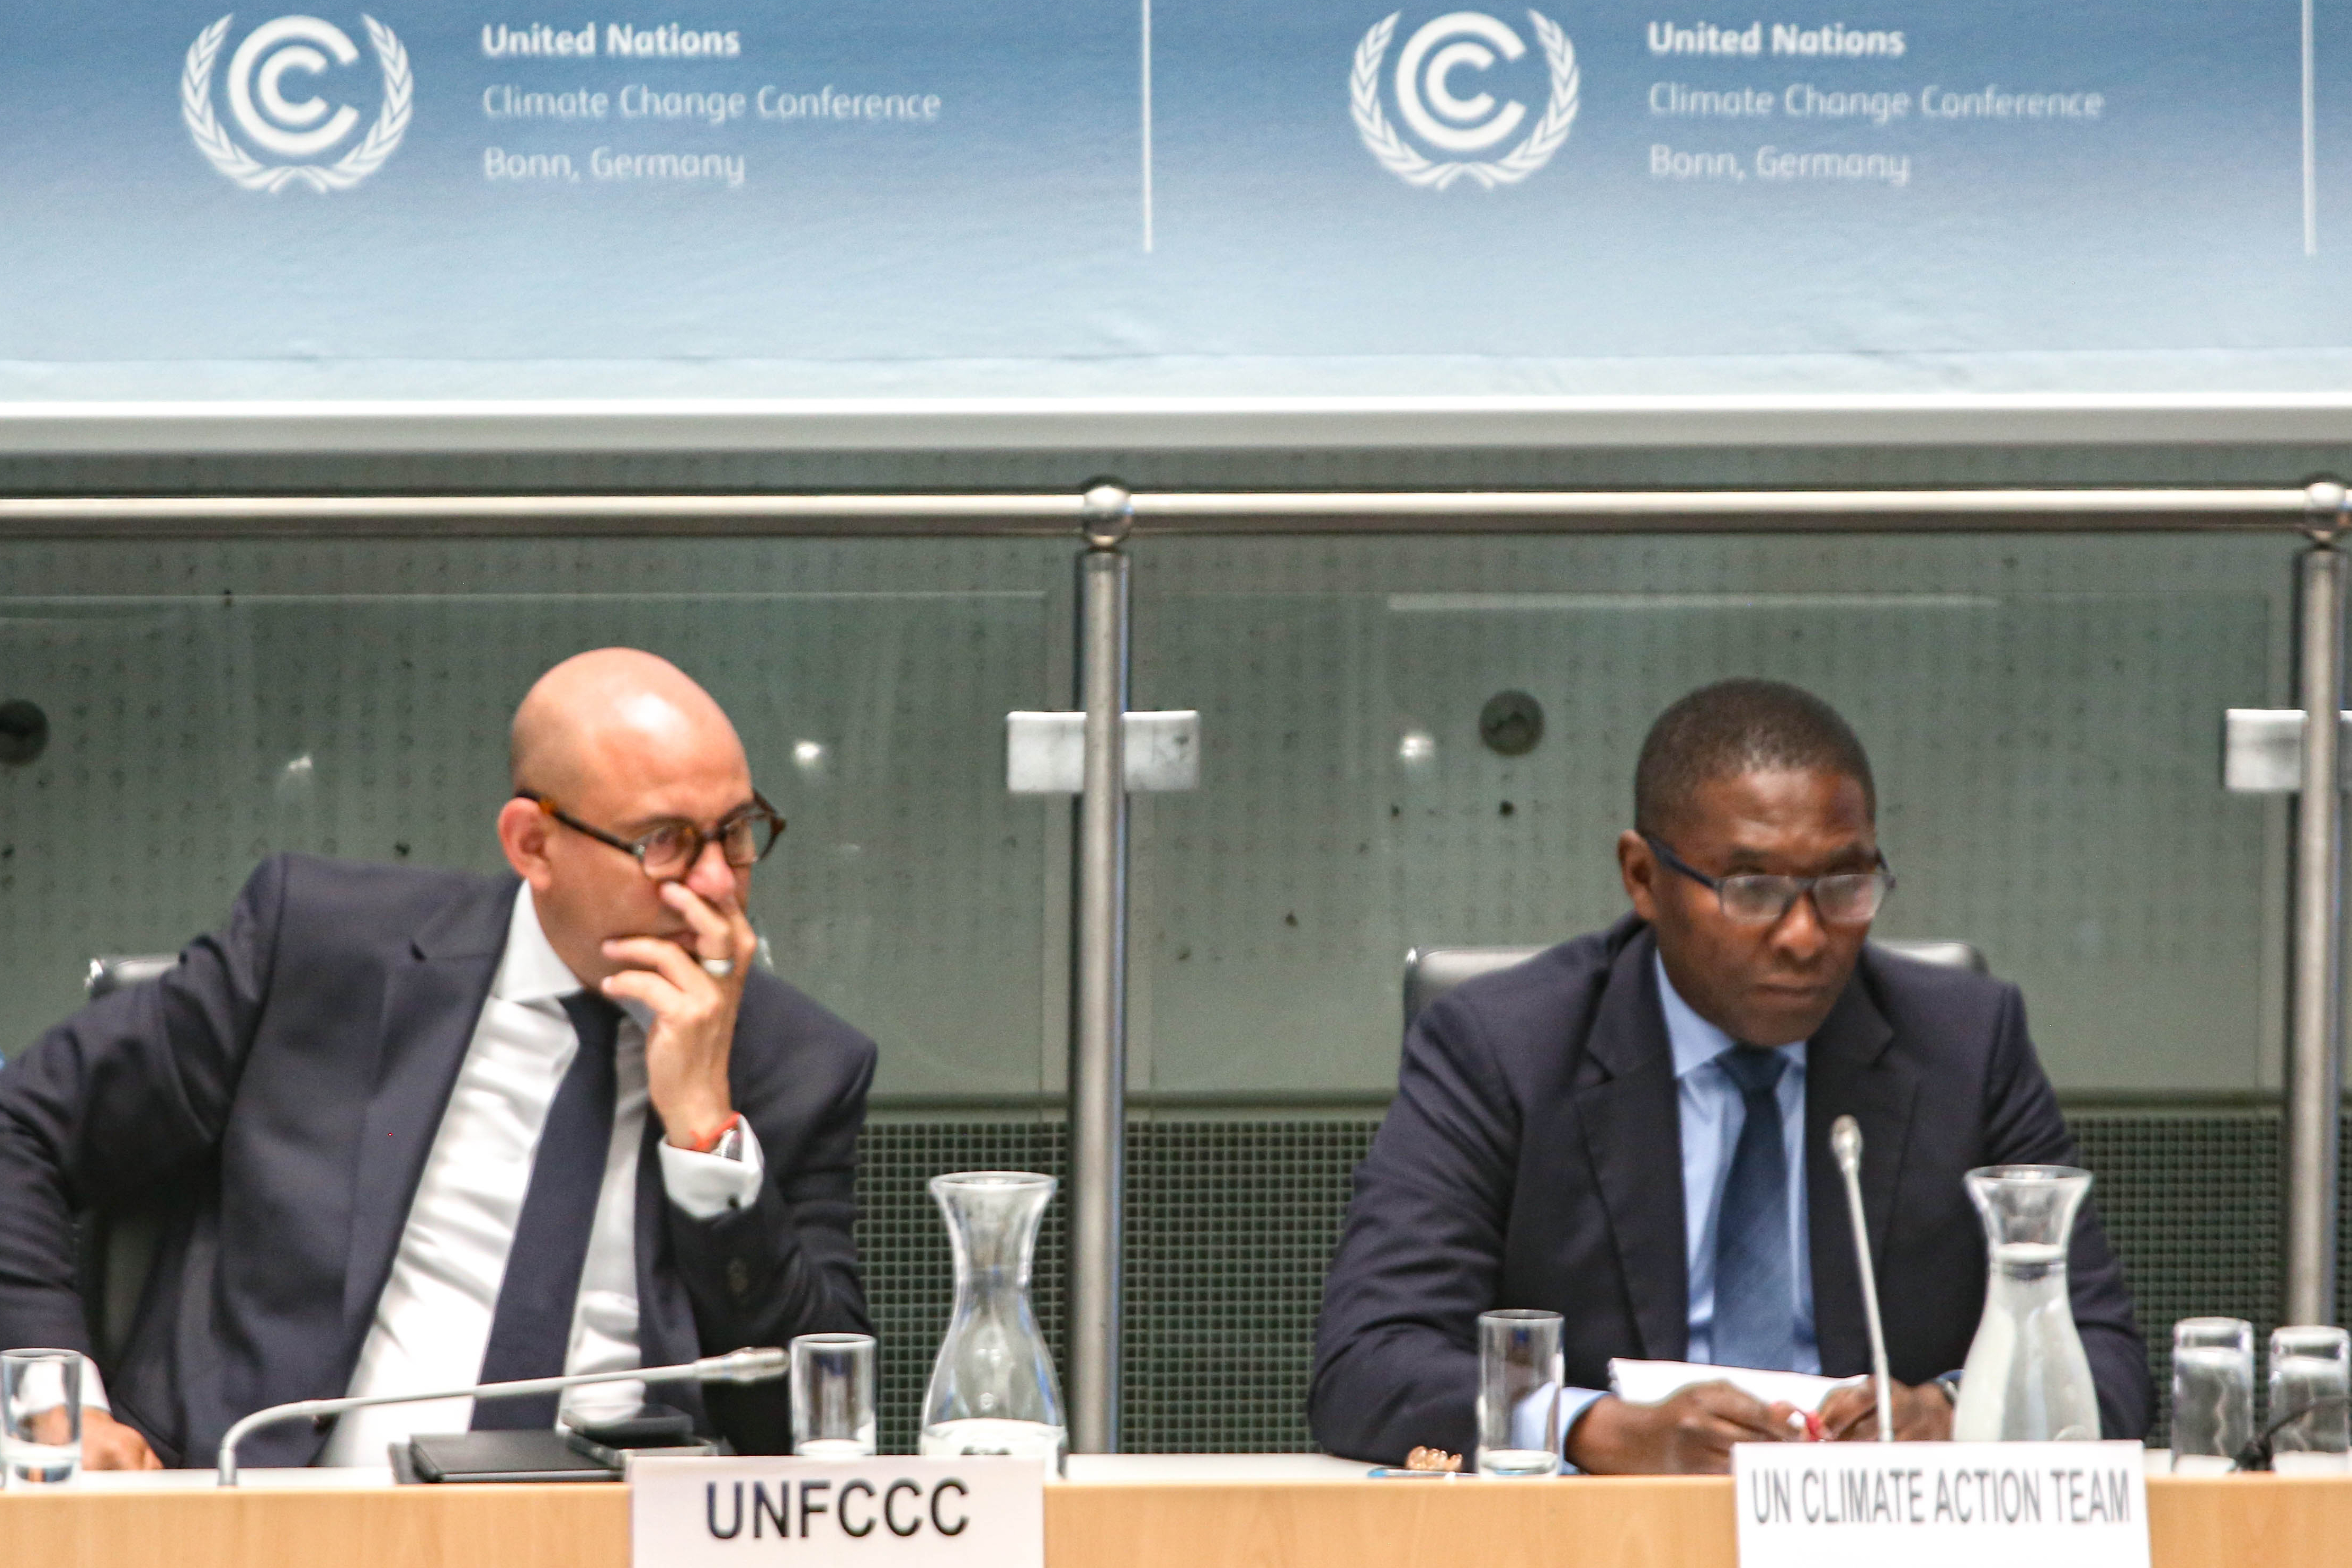 Simon Stiell, Generalsekretär des United Nations Framework on Climate Change sitzt auf dem Podium, hört einem Bericht zu indem er mit der rechten Hand seinen Mund verbirgt. Die Geste wirkt zuückhaltend. Zu seiner Linken sitzt ein weiterer Mann vom UN Climate Team 